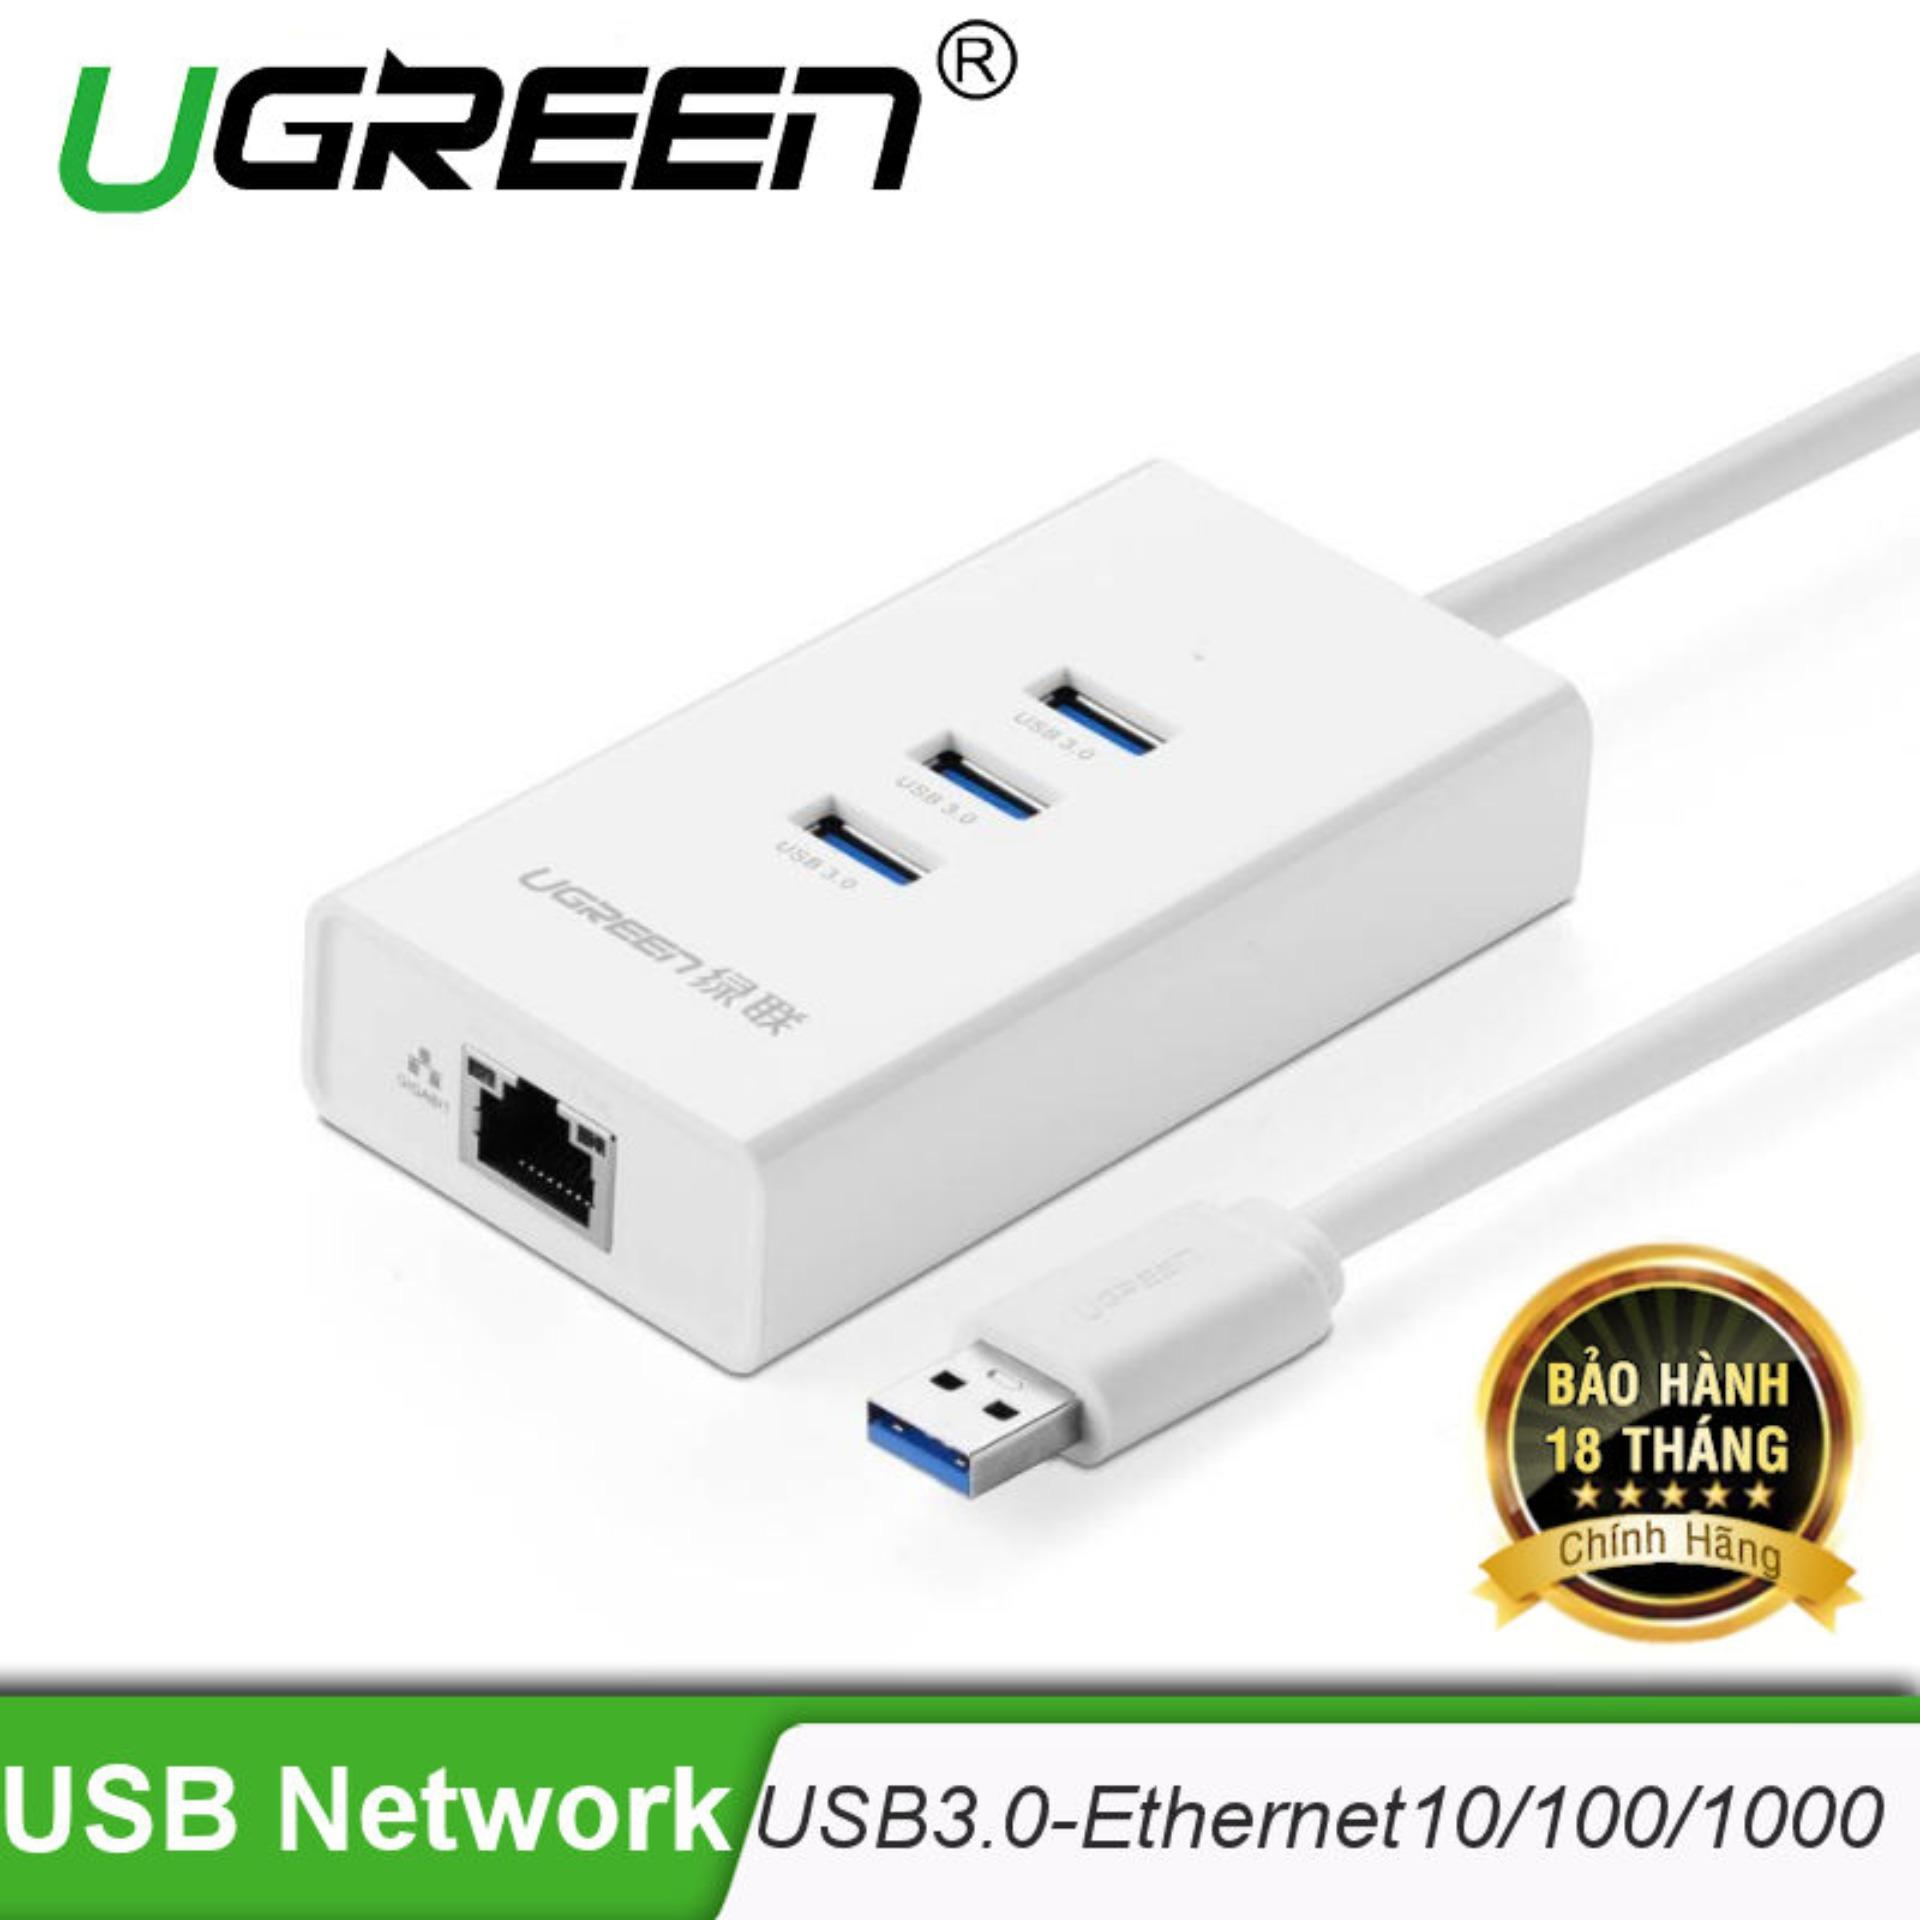 USB 3.0 kết hợp cổng Ethernet 10/100Mbps (Chip REATEK) Ugreen CR102 20262 - Hãng phân phối chính thức